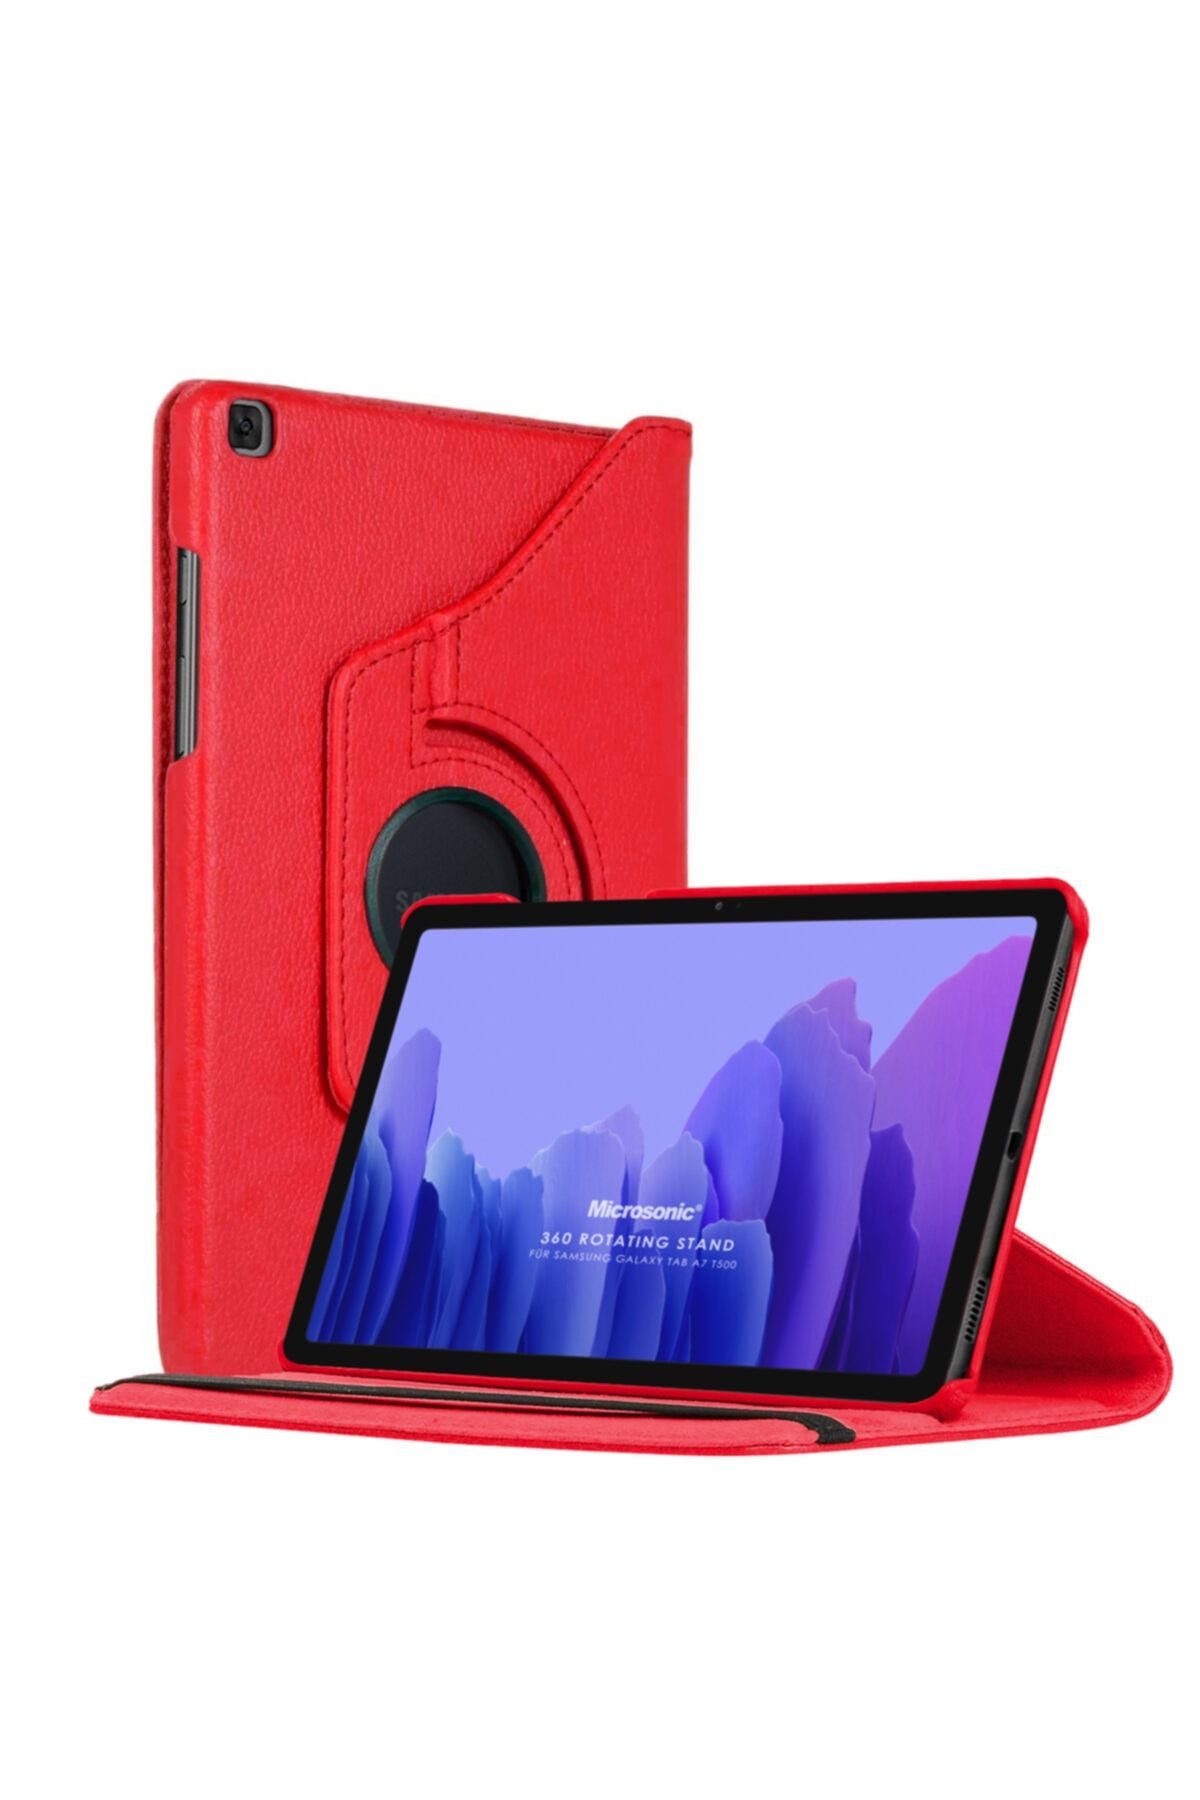 Microsonic Galaxy Tab A7 T500 Uyumlu Kılıf 360 Rotating Stand Deri Kırmızı